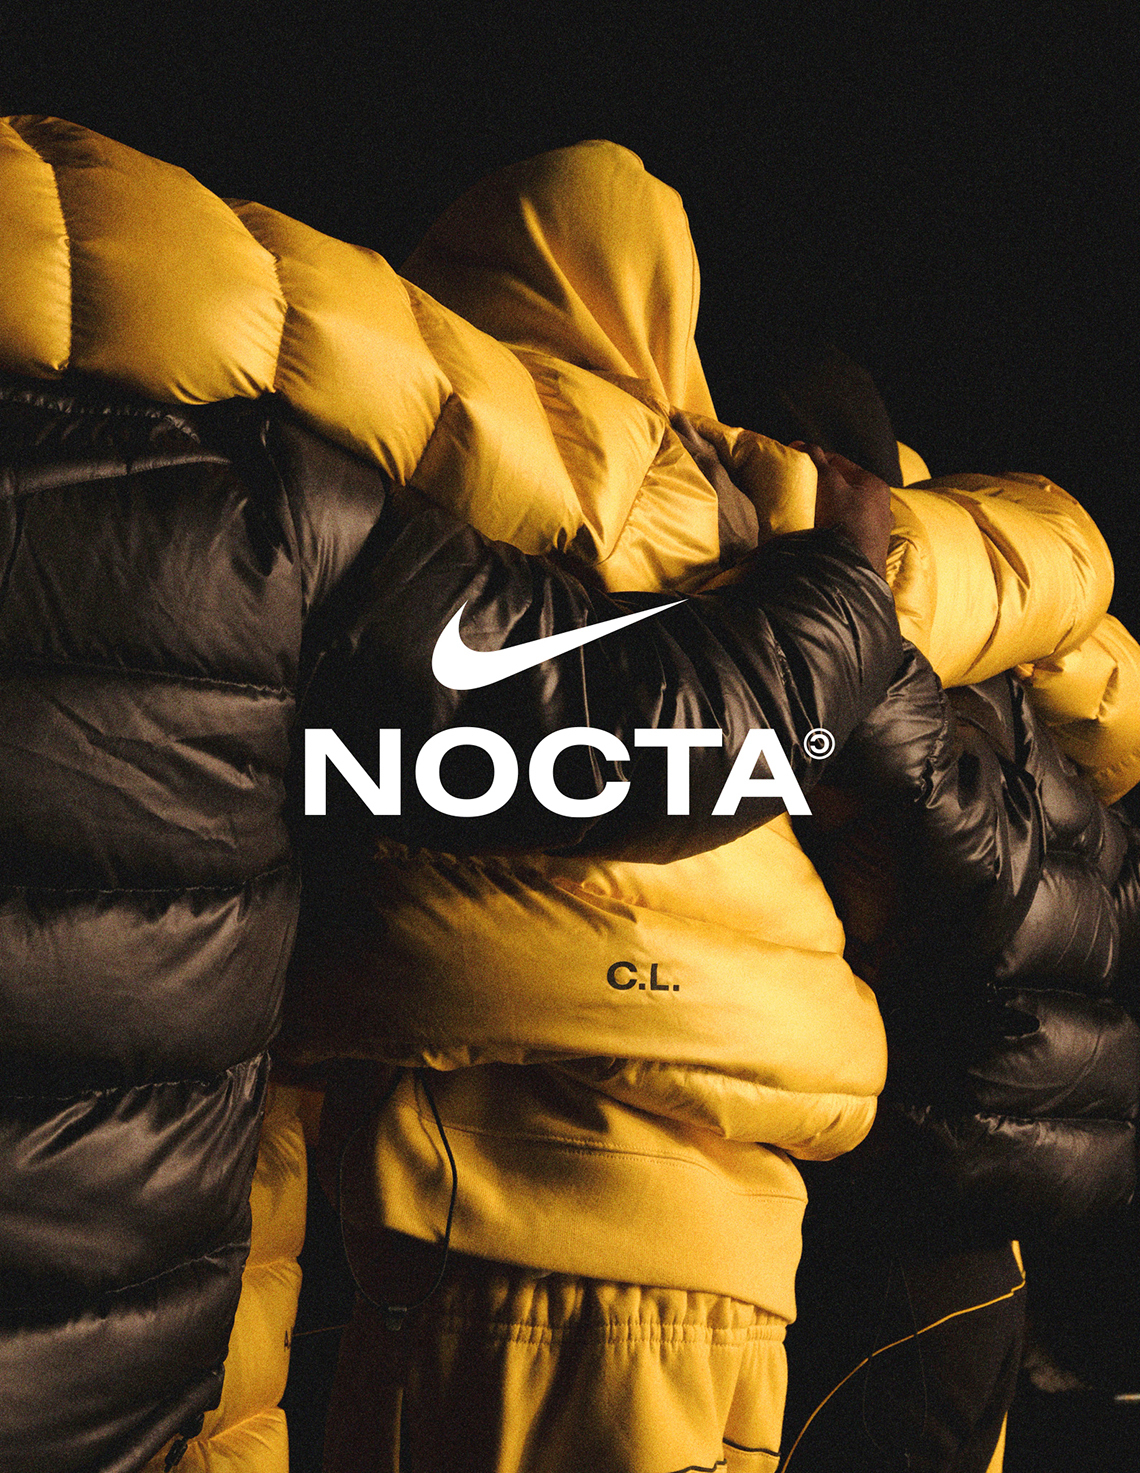 Nocta sẽ là thương hiệu kết hợp giữa Nike và rapper Drake. Dự kiện Nocta sẽ được mở bán trên toàn thế giới vào ngày 18/12